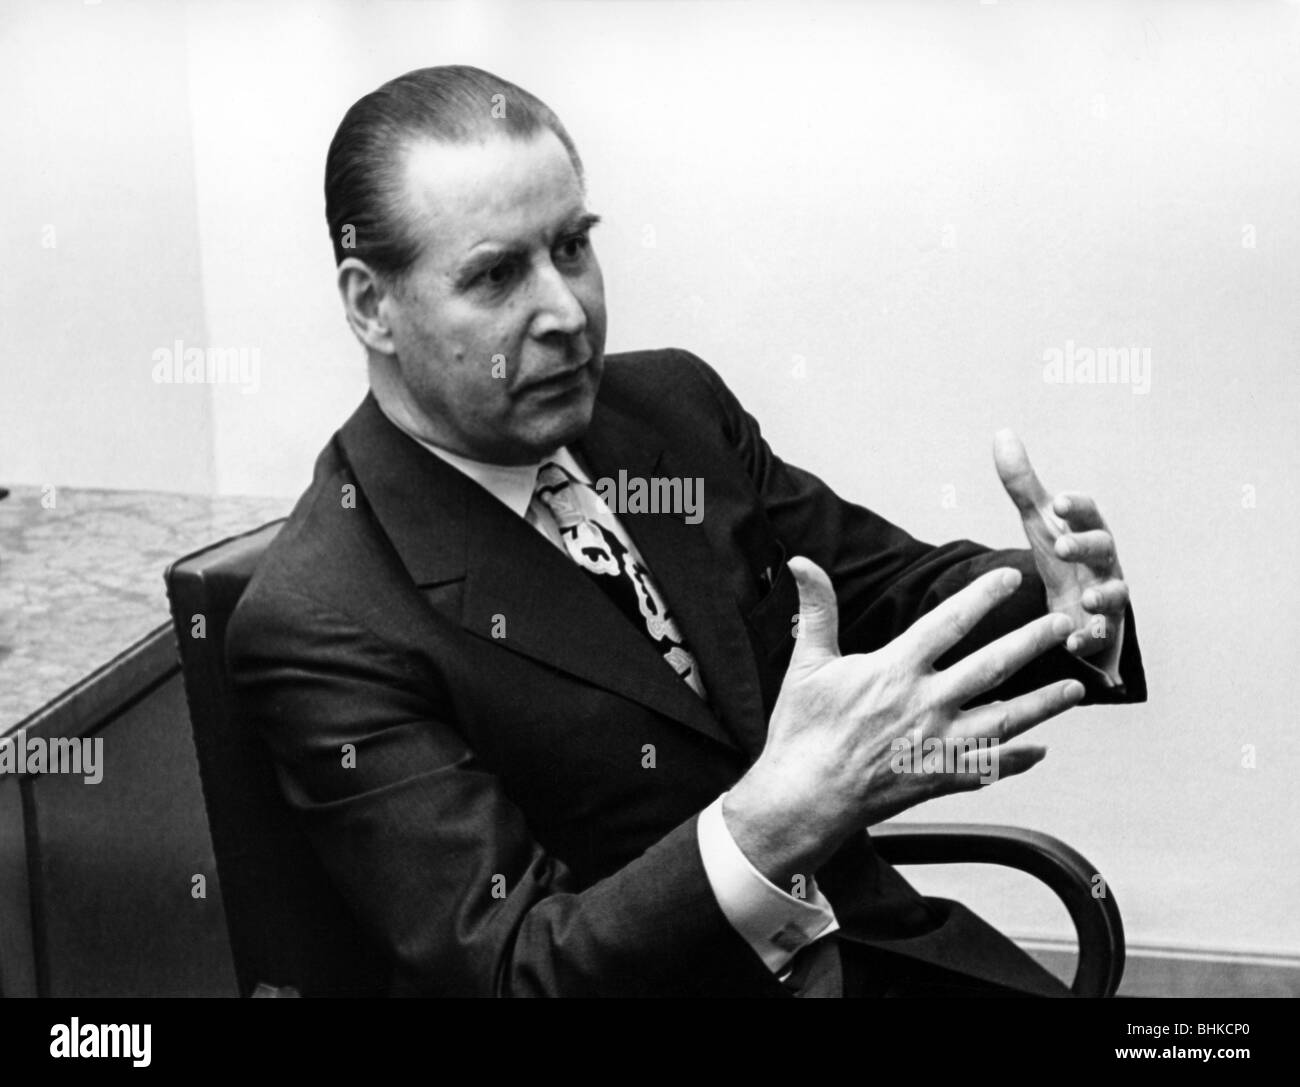 Schroeder, Gerhard, 11.10.1910 - 31.12.1989, deutscher Politiker (CDU), Vorsitzender des Ausschusses für auswärtige Angelegenheiten 1969 - 1980, während eines Interviews Anfang der 1970er Jahre, Stockfoto